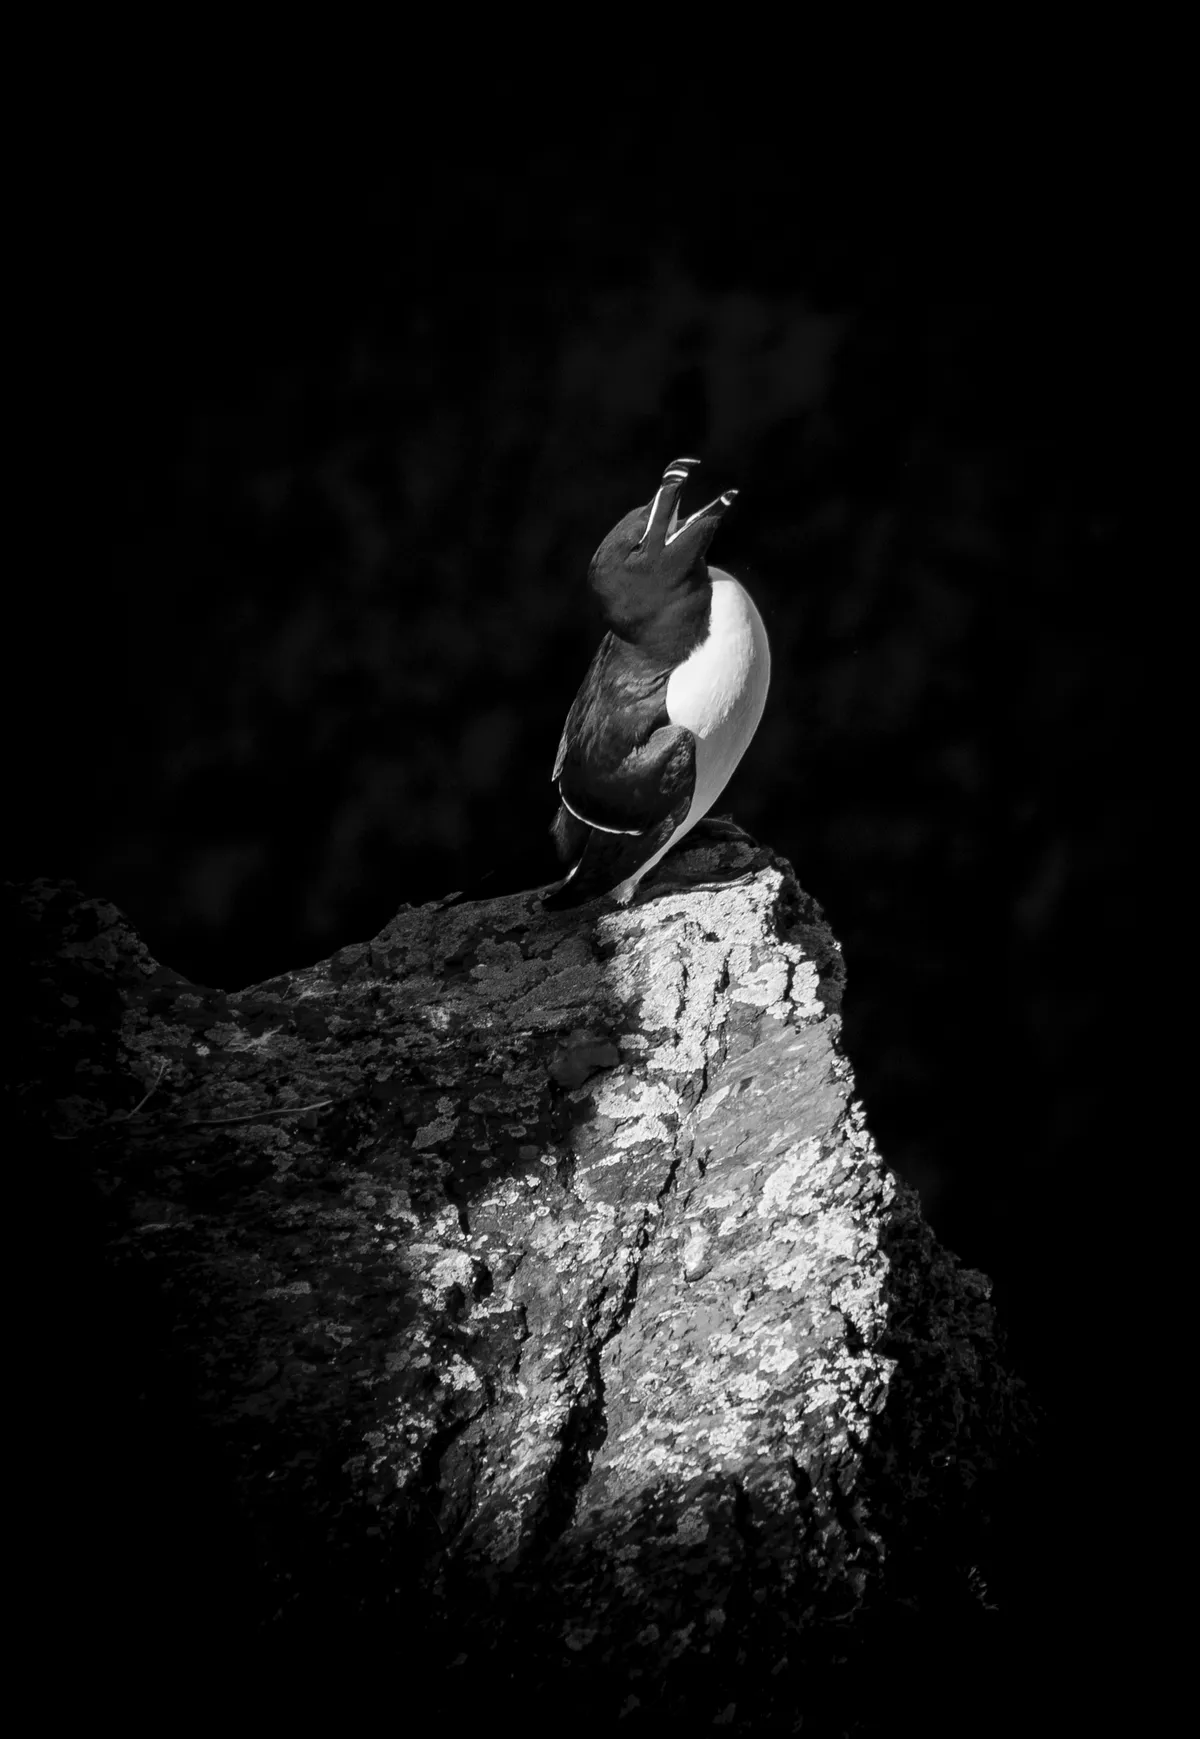 Under 12 winner: Under the spotlight (razorbill, Skokholm Island, Pembrokeshire). © Ollie Teasdale/British Wildlife Photography Awards